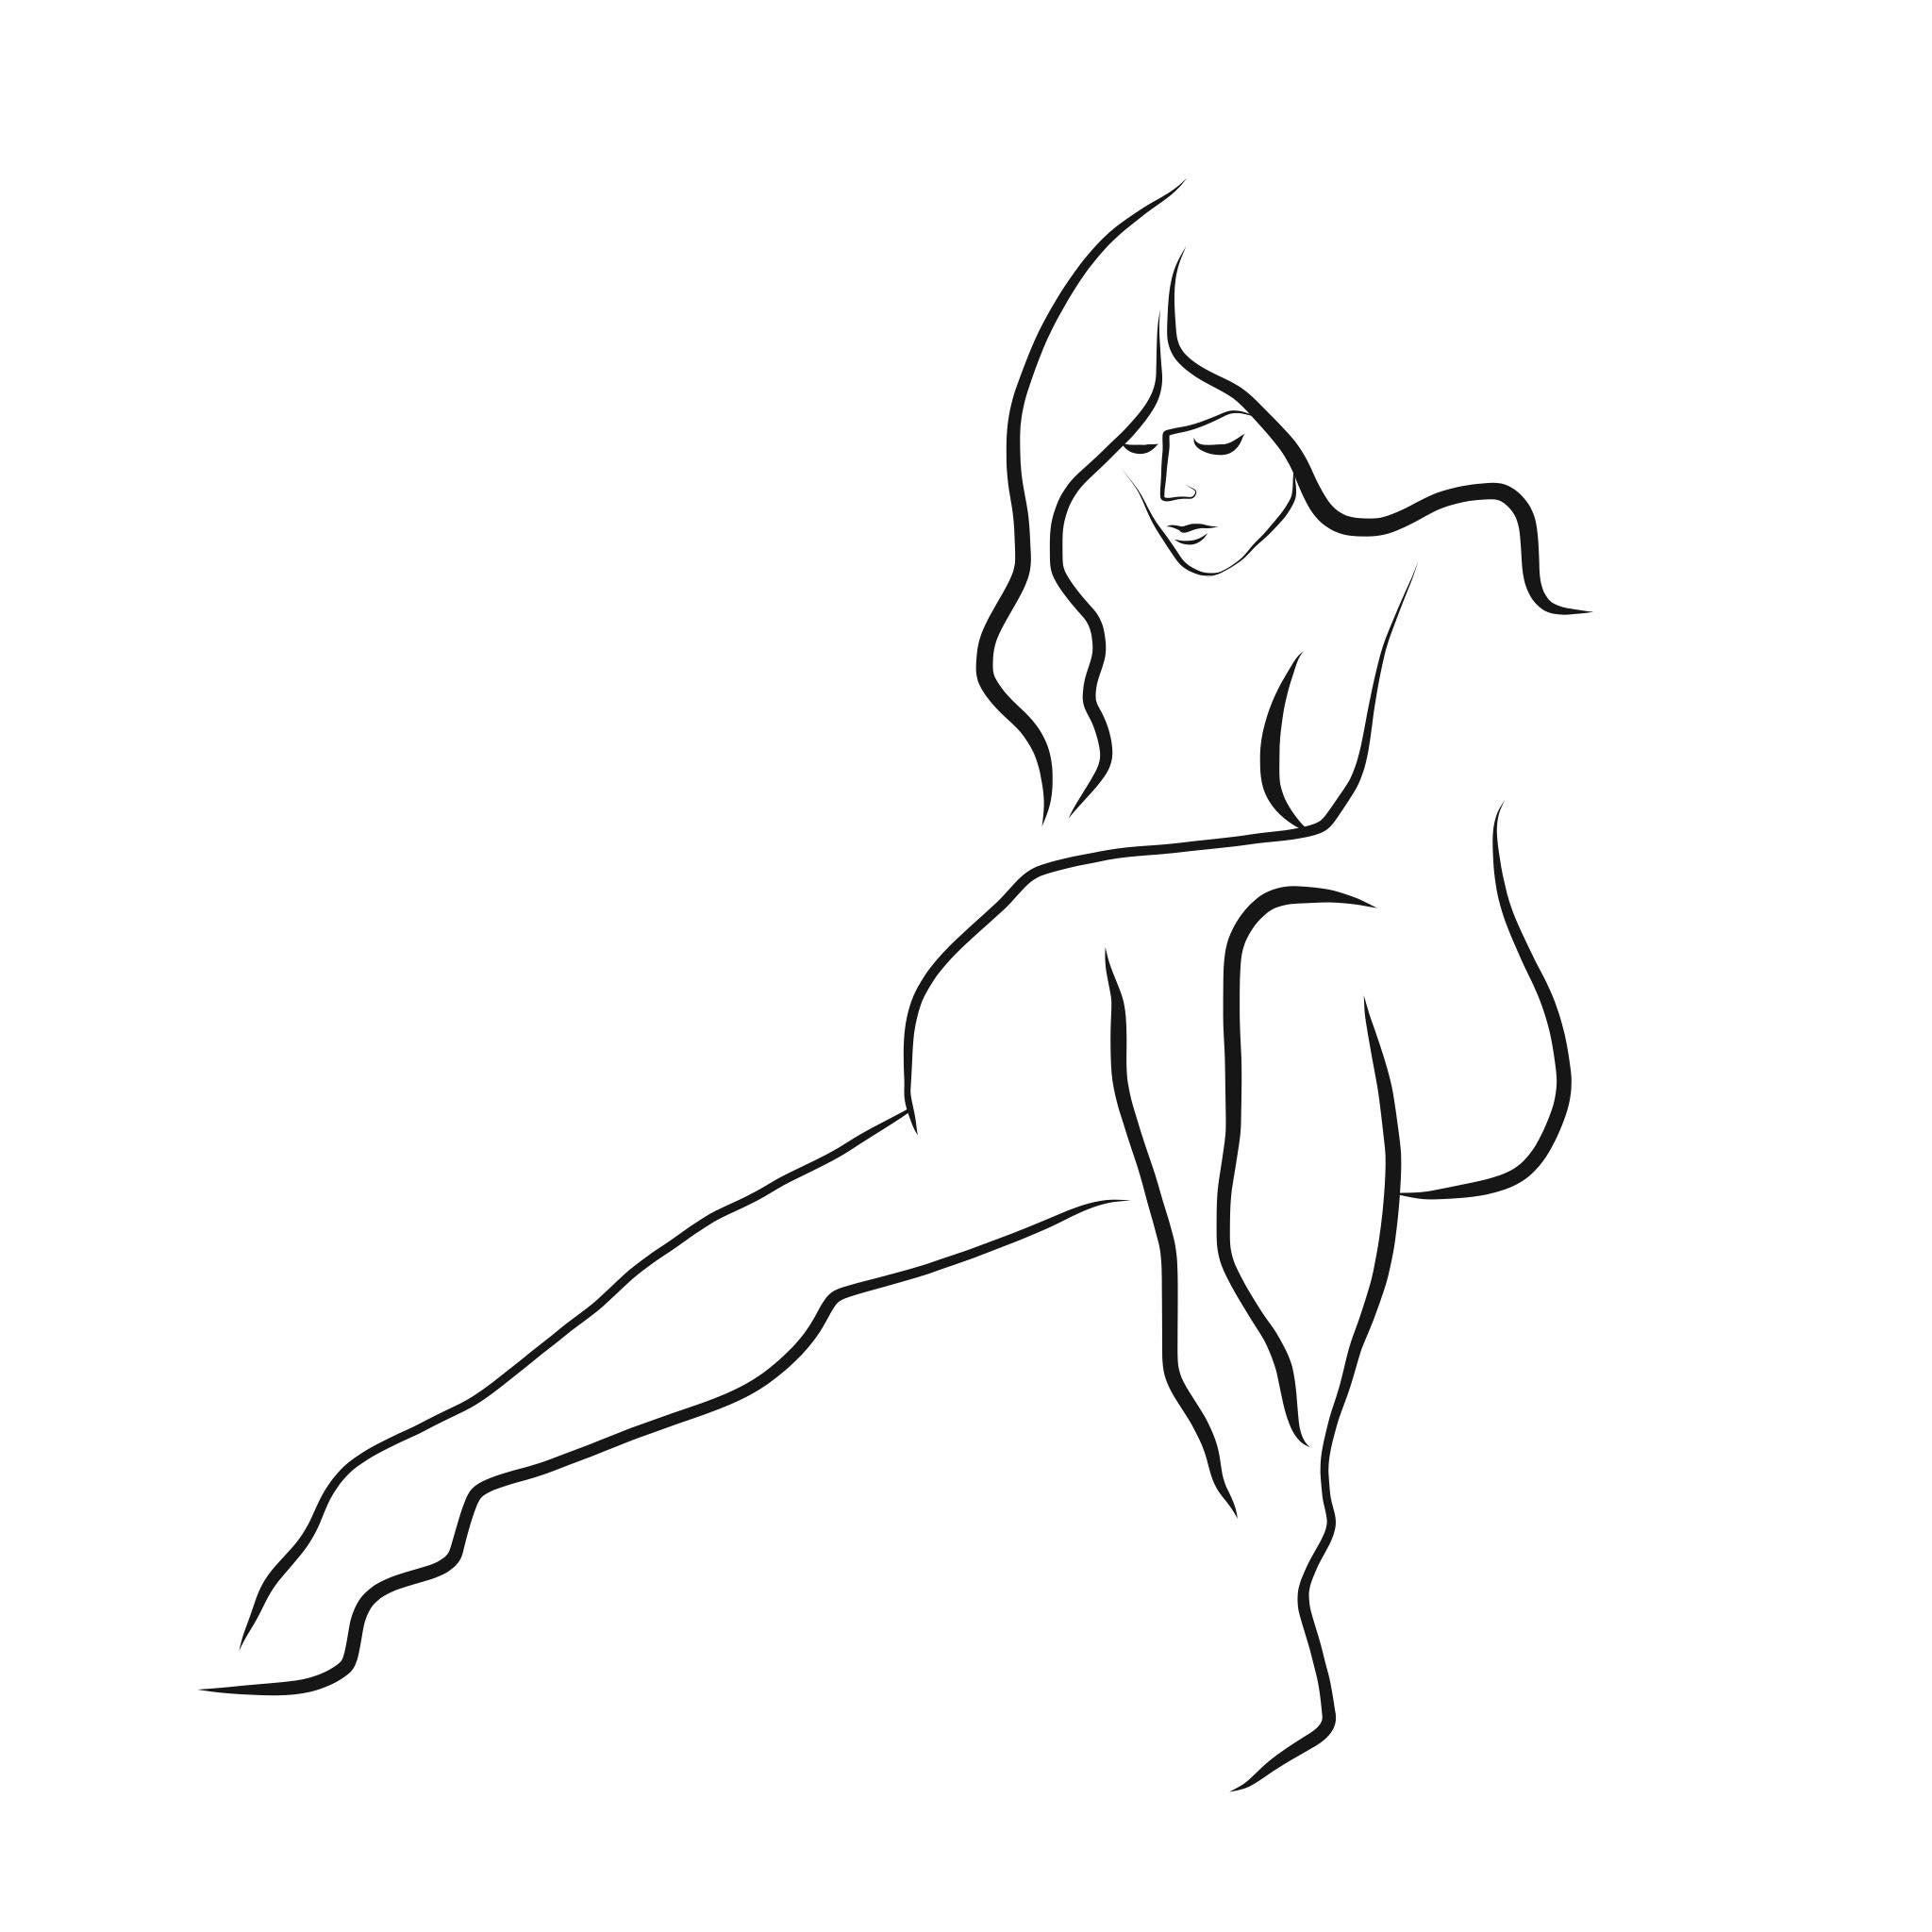 Michael Binkley Nude Print - Haiku #40, 1/50 - Digital Vector Drawing Seated Female Nude Woman Figure